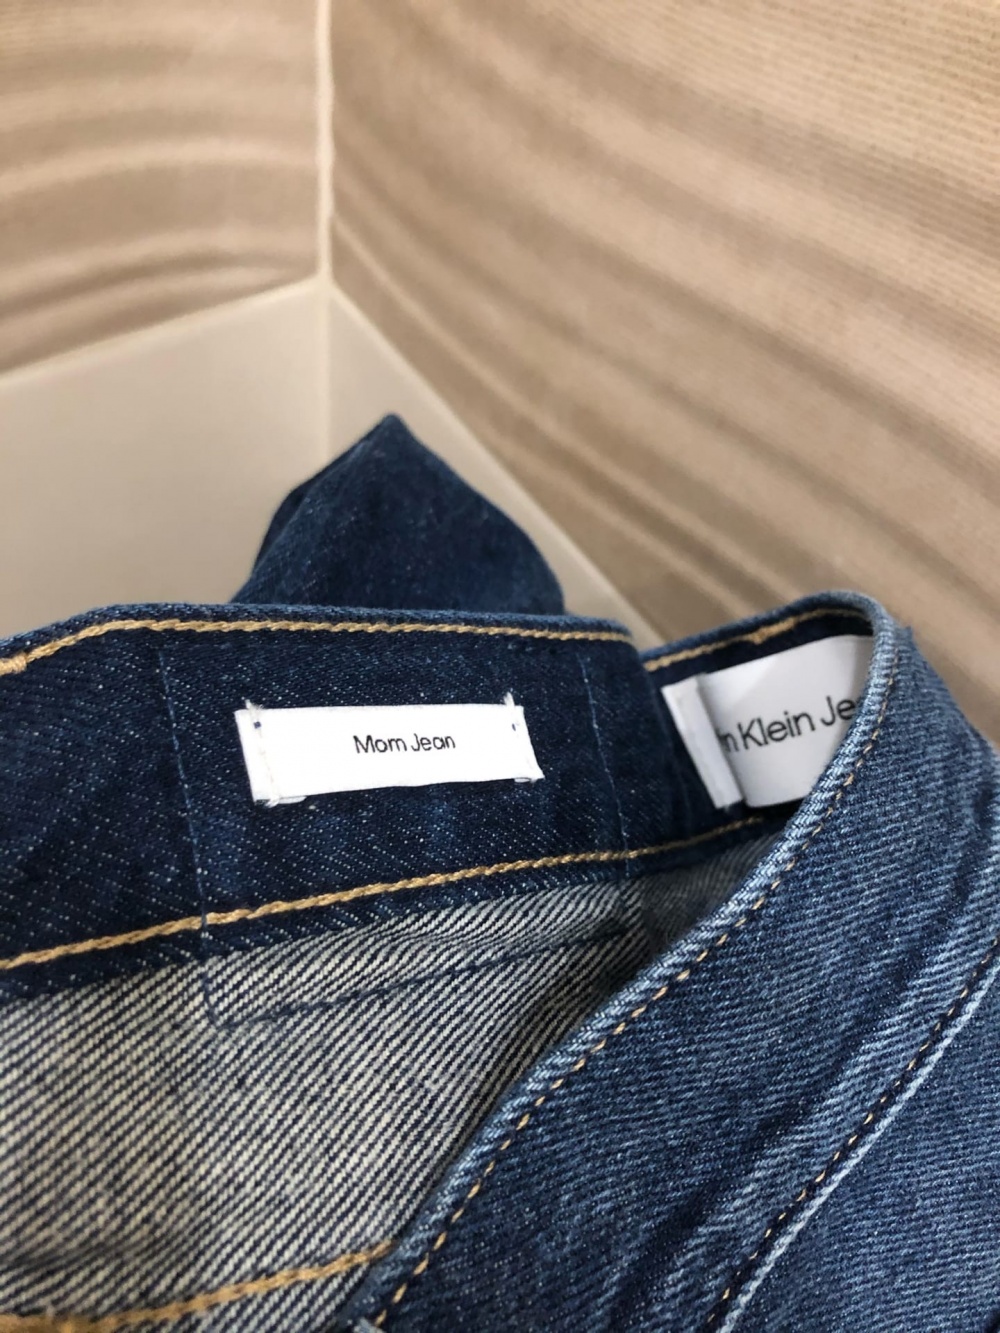 Женские джинсы Calvin Klein.Размер W 28.